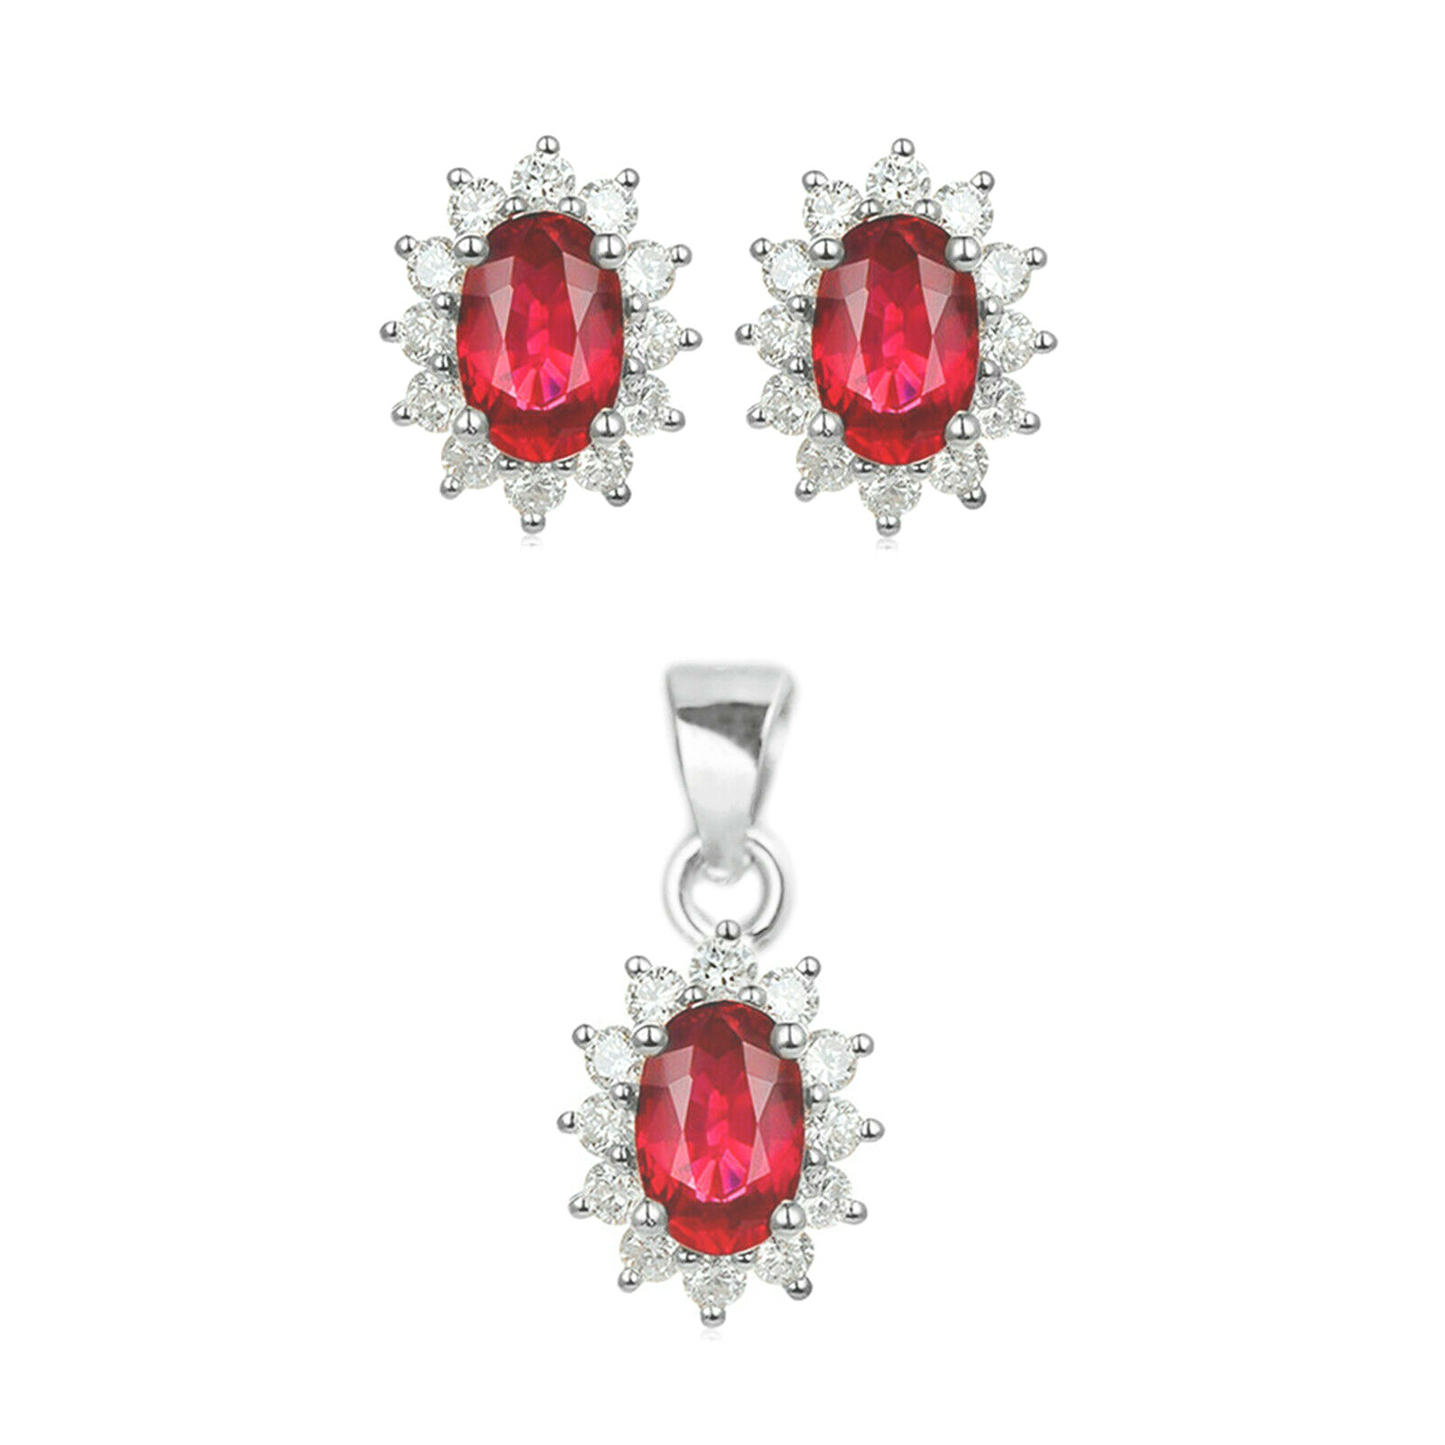 Red Pyrope Garnet Colour CZ Halo Cluster Stud Earrings in Sterling Silver - sugarkittenlondon